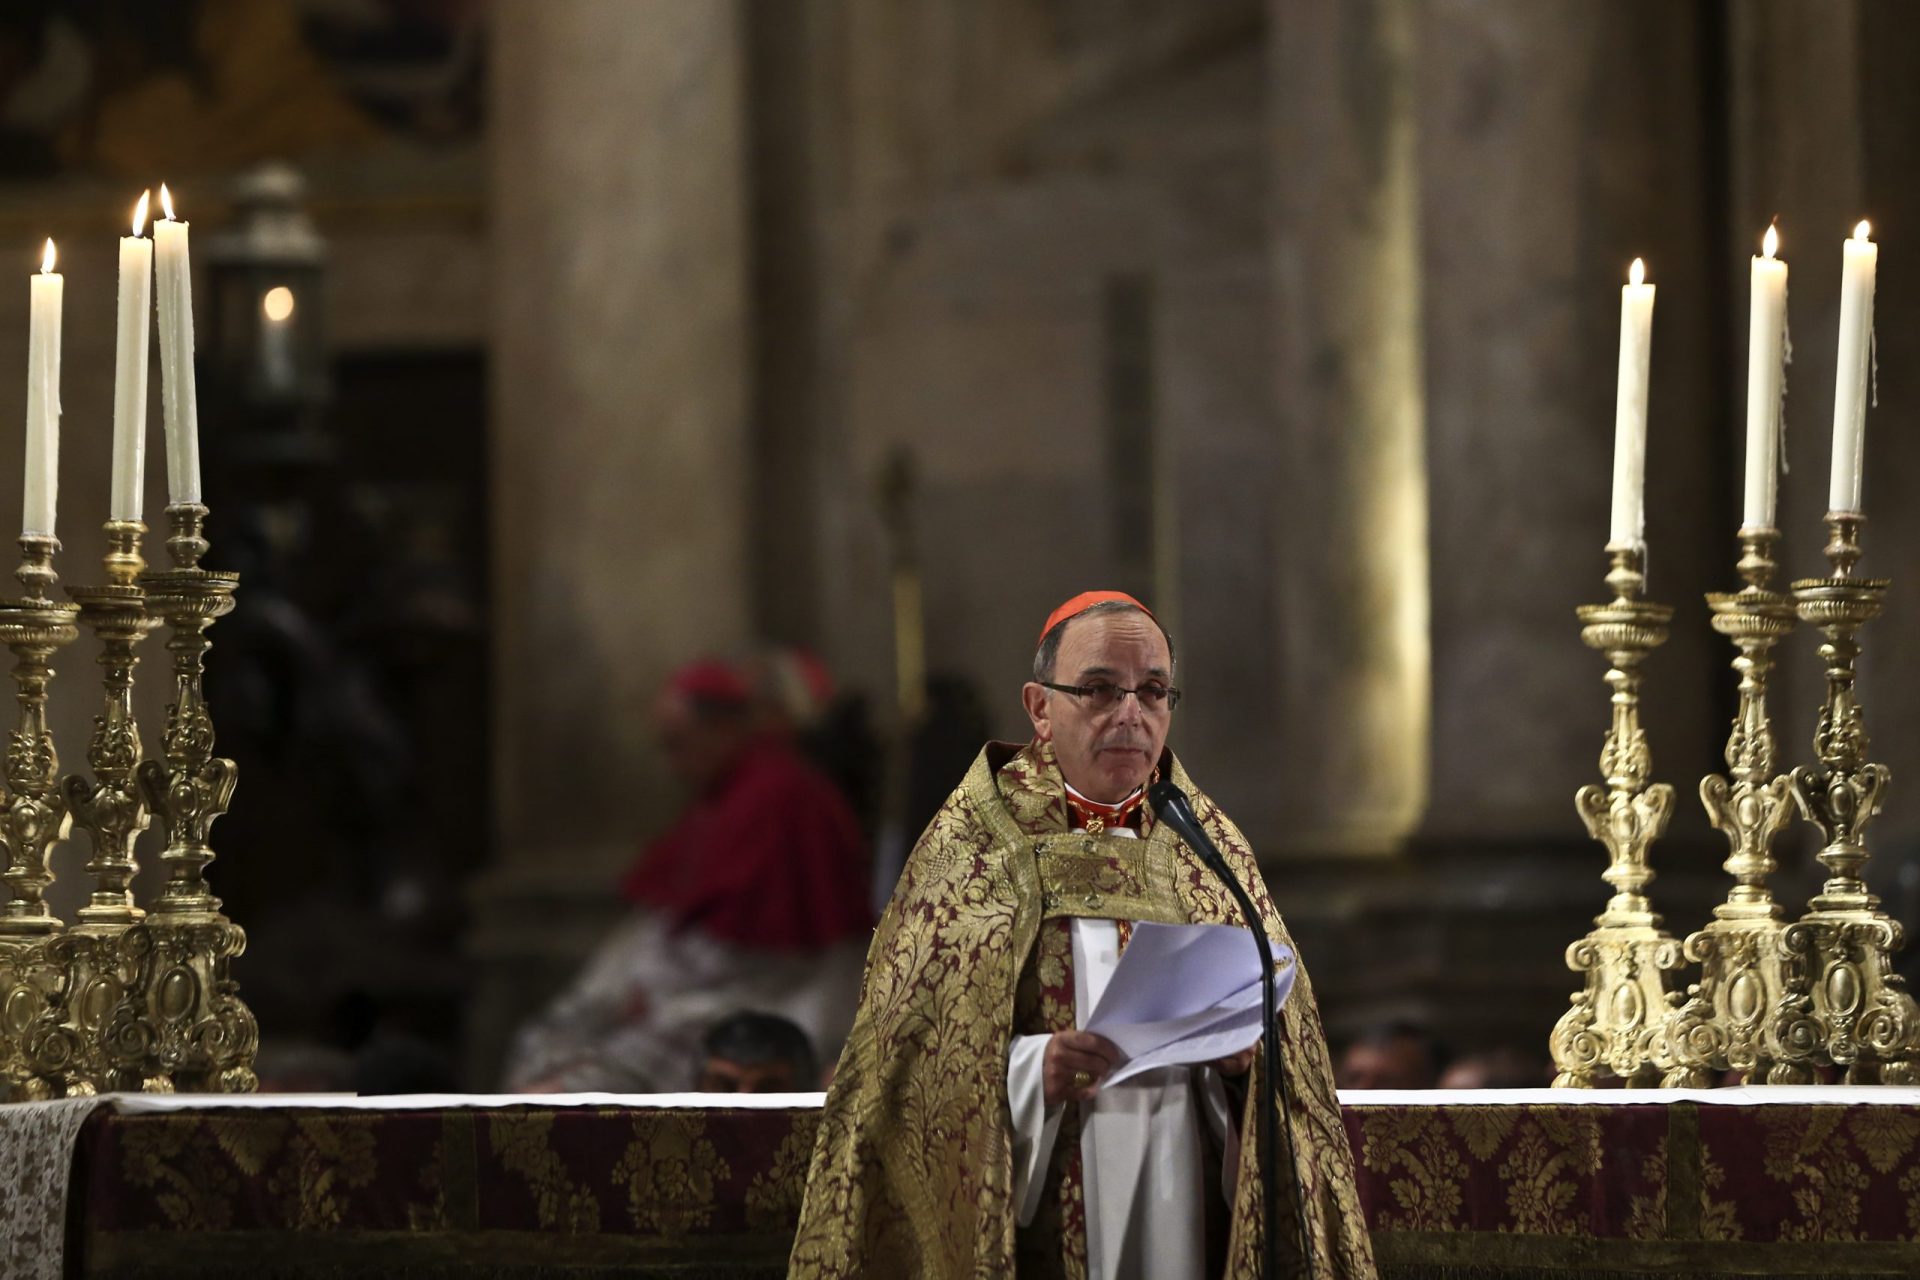 Cardeal-patriarca exorta católicos a serem &#8216;ilhas de misericórdia no mar da indiferença&#8217;